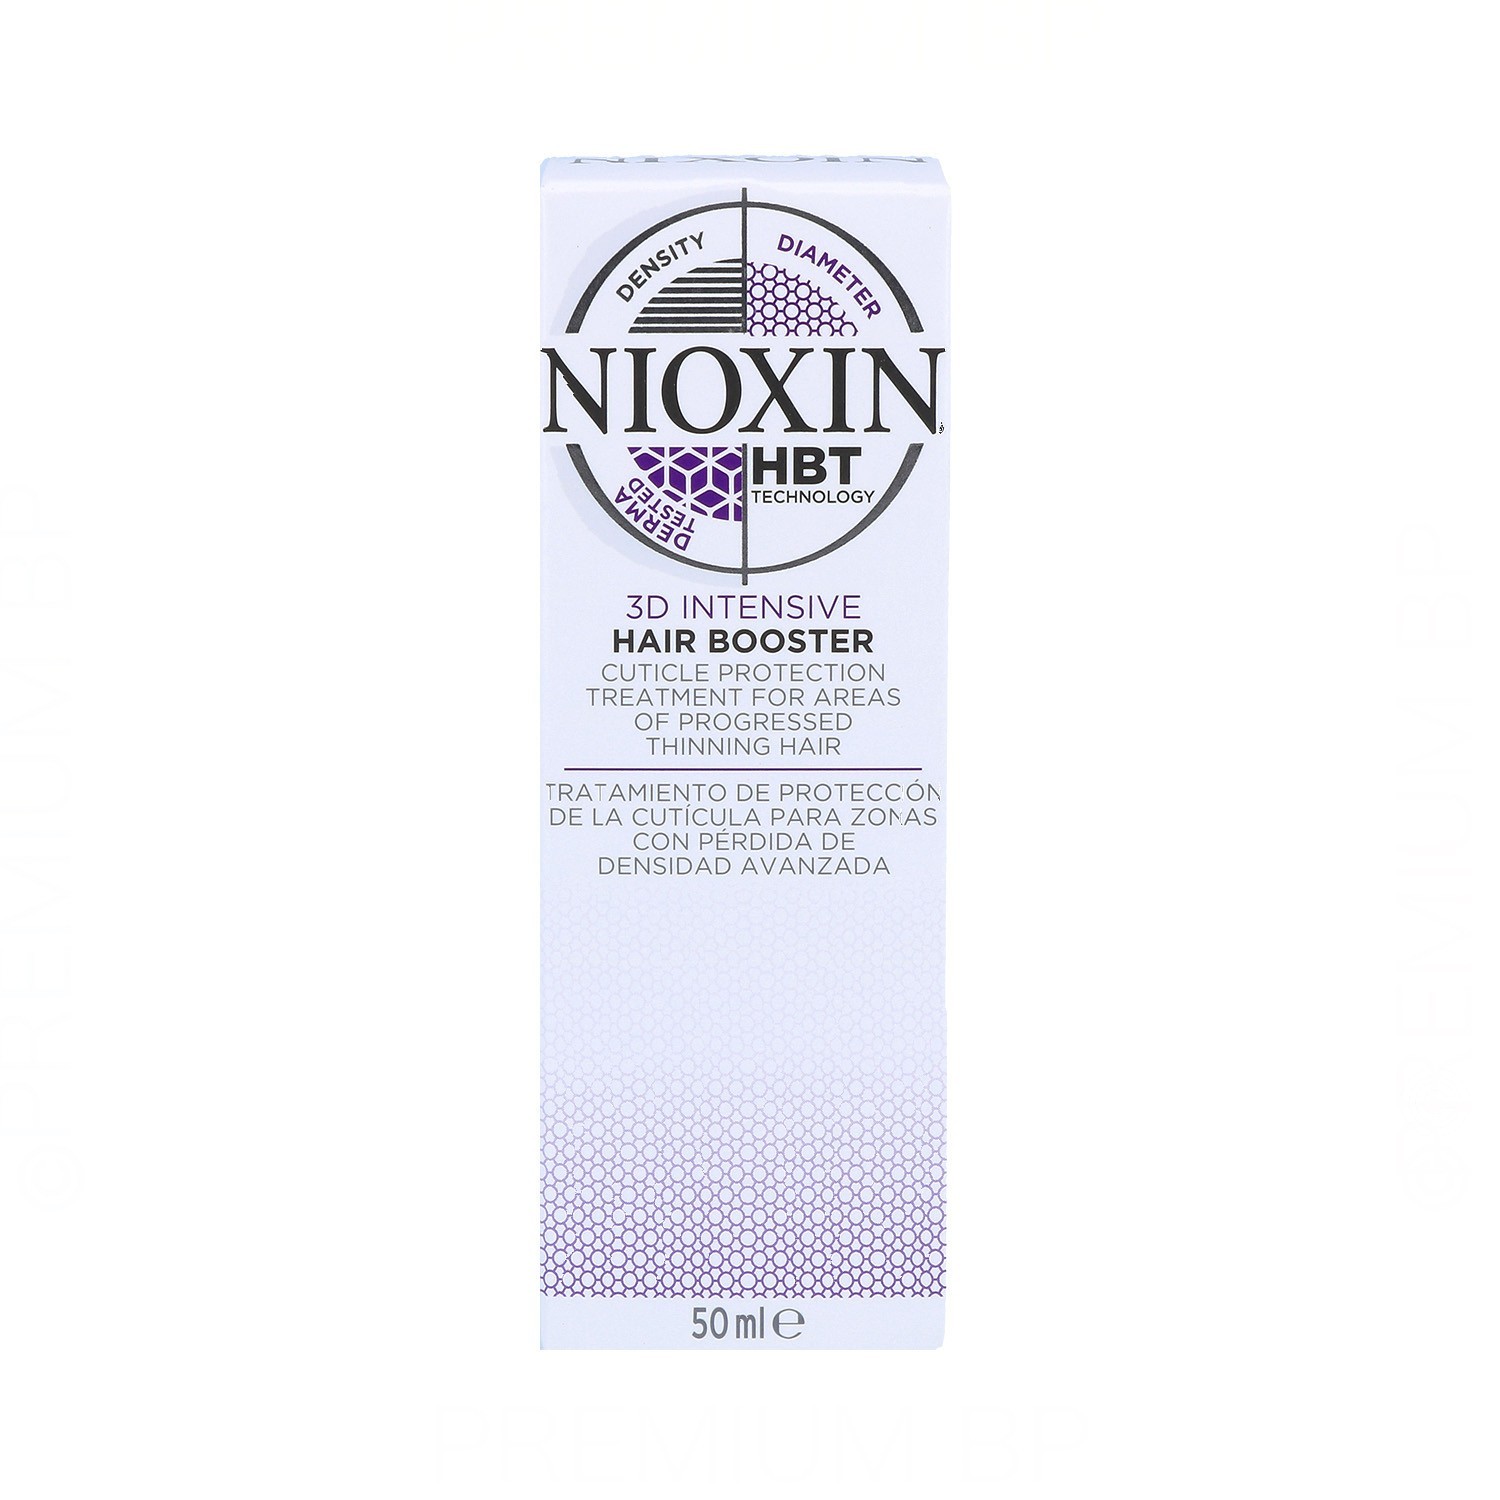 Wella Nioxin Hair Booster 50 ml